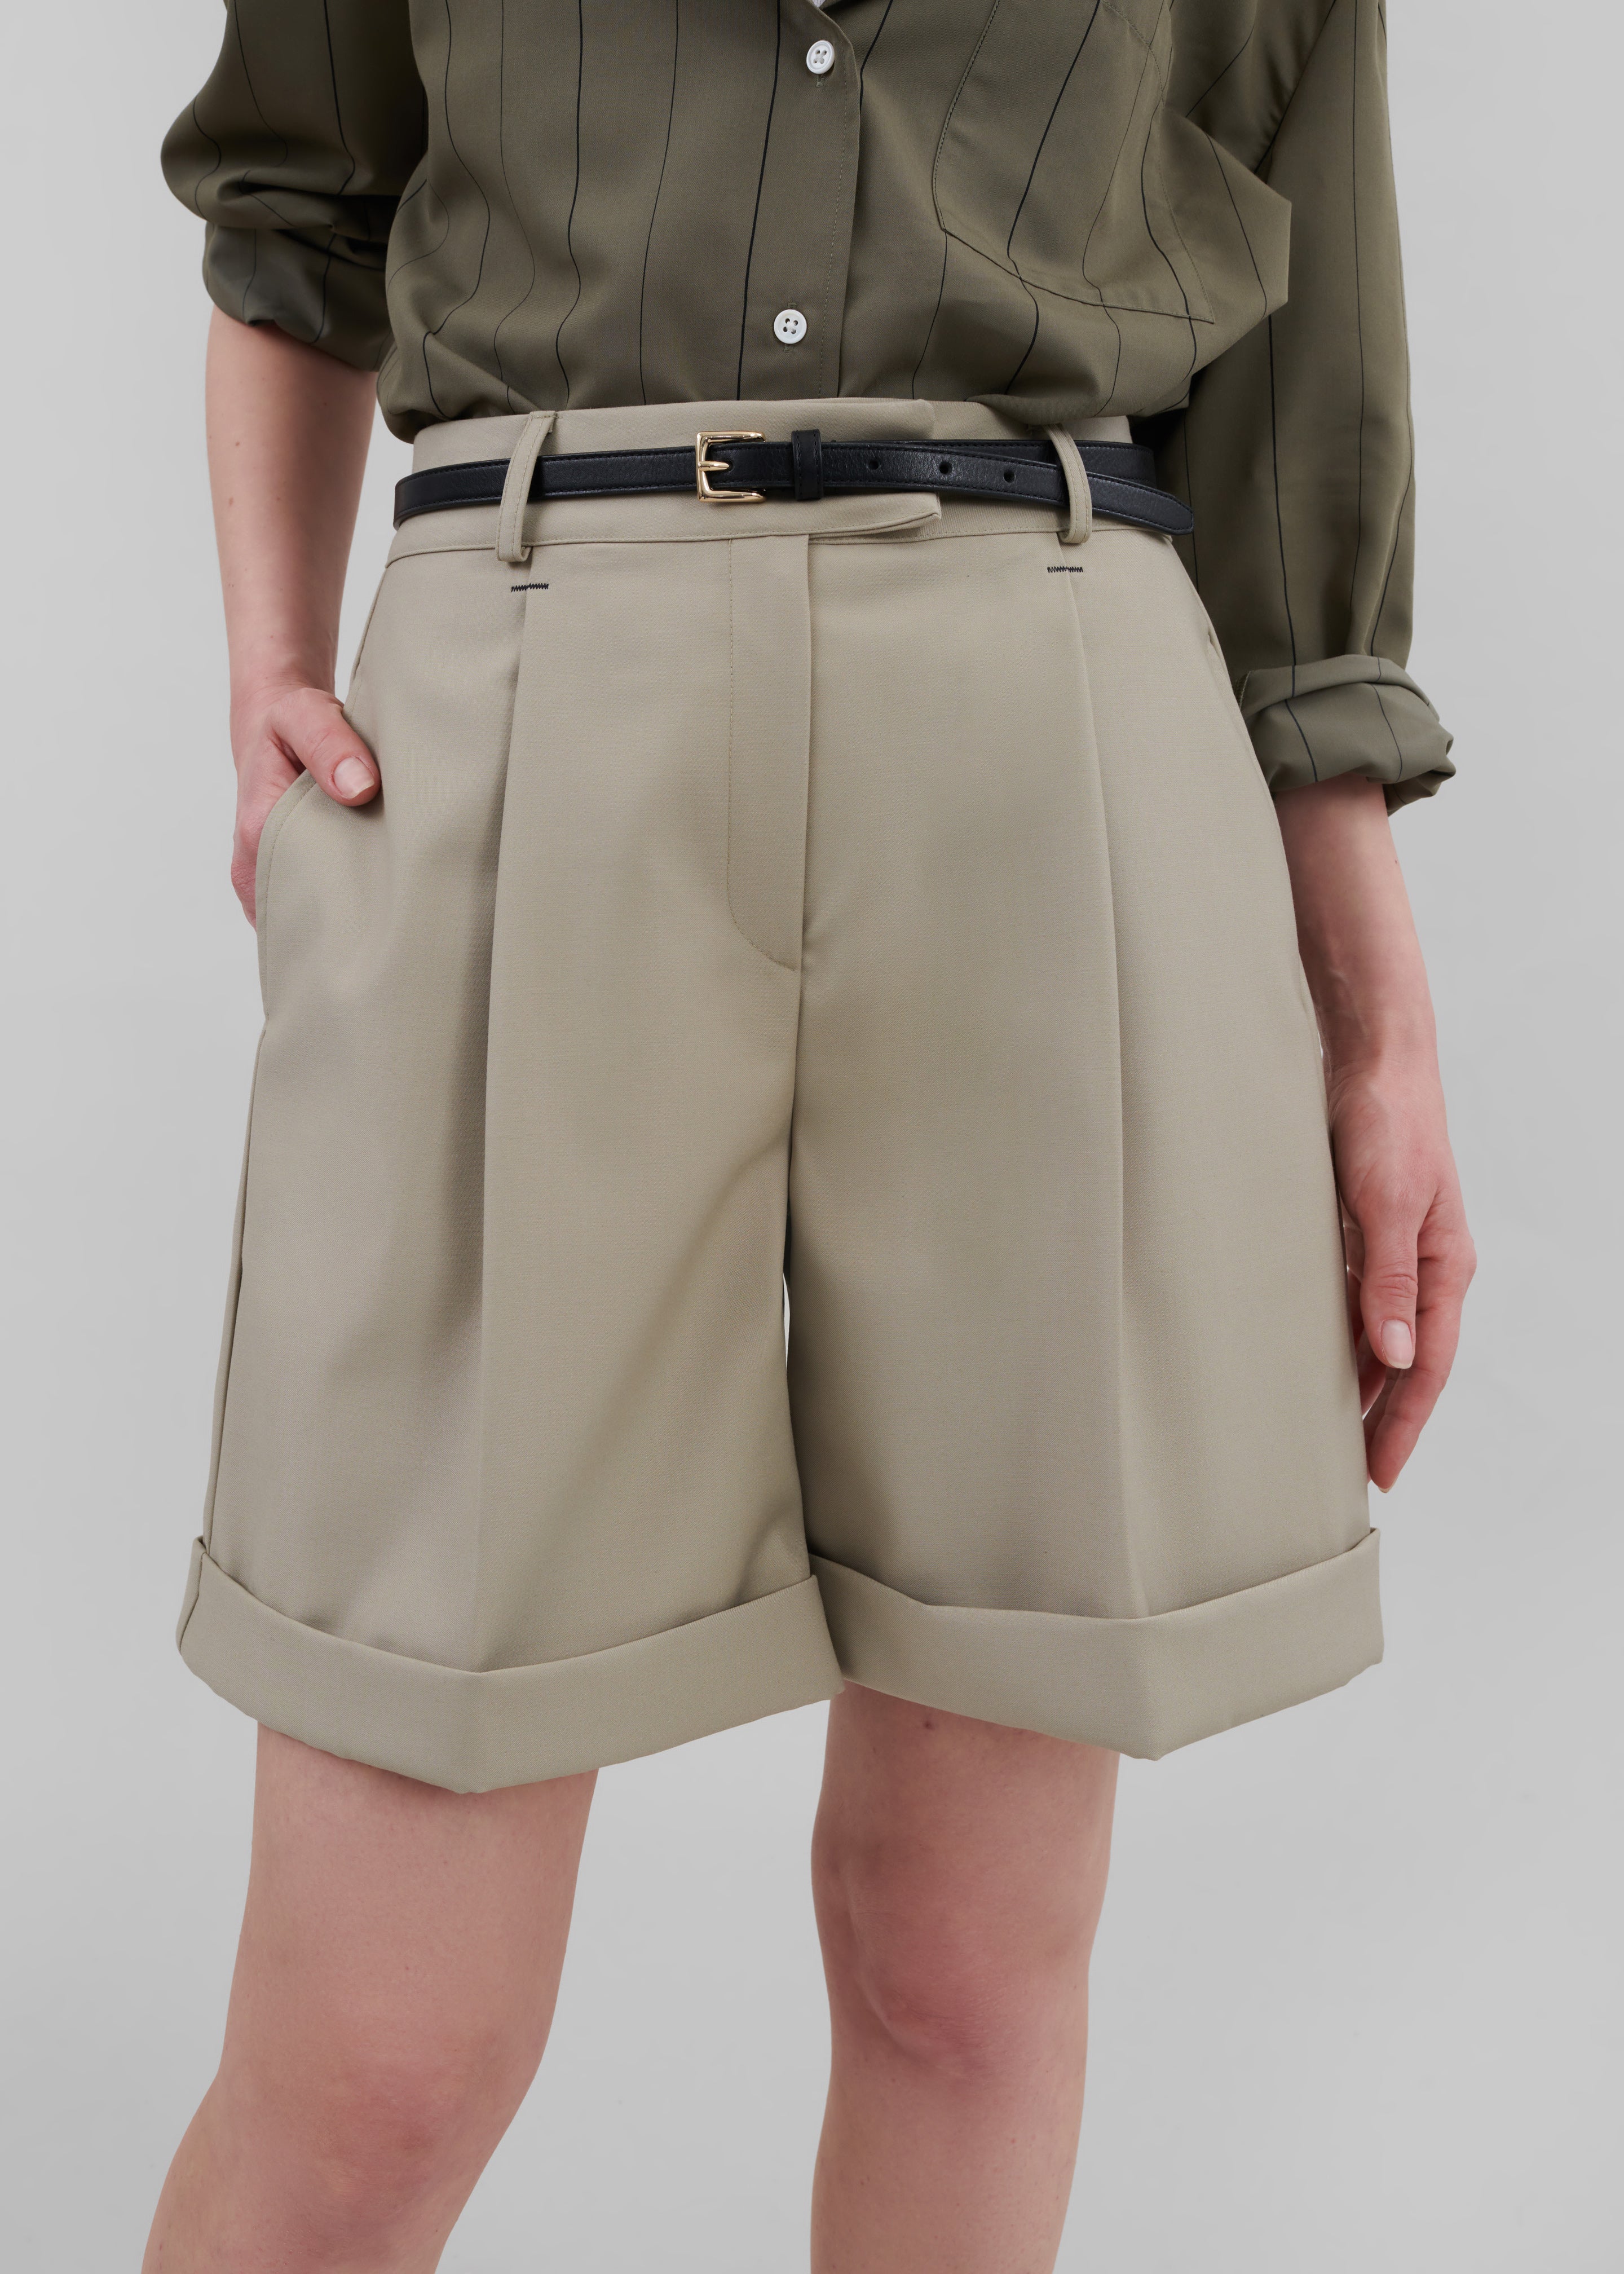 April Suit Shorts - Beige - 6